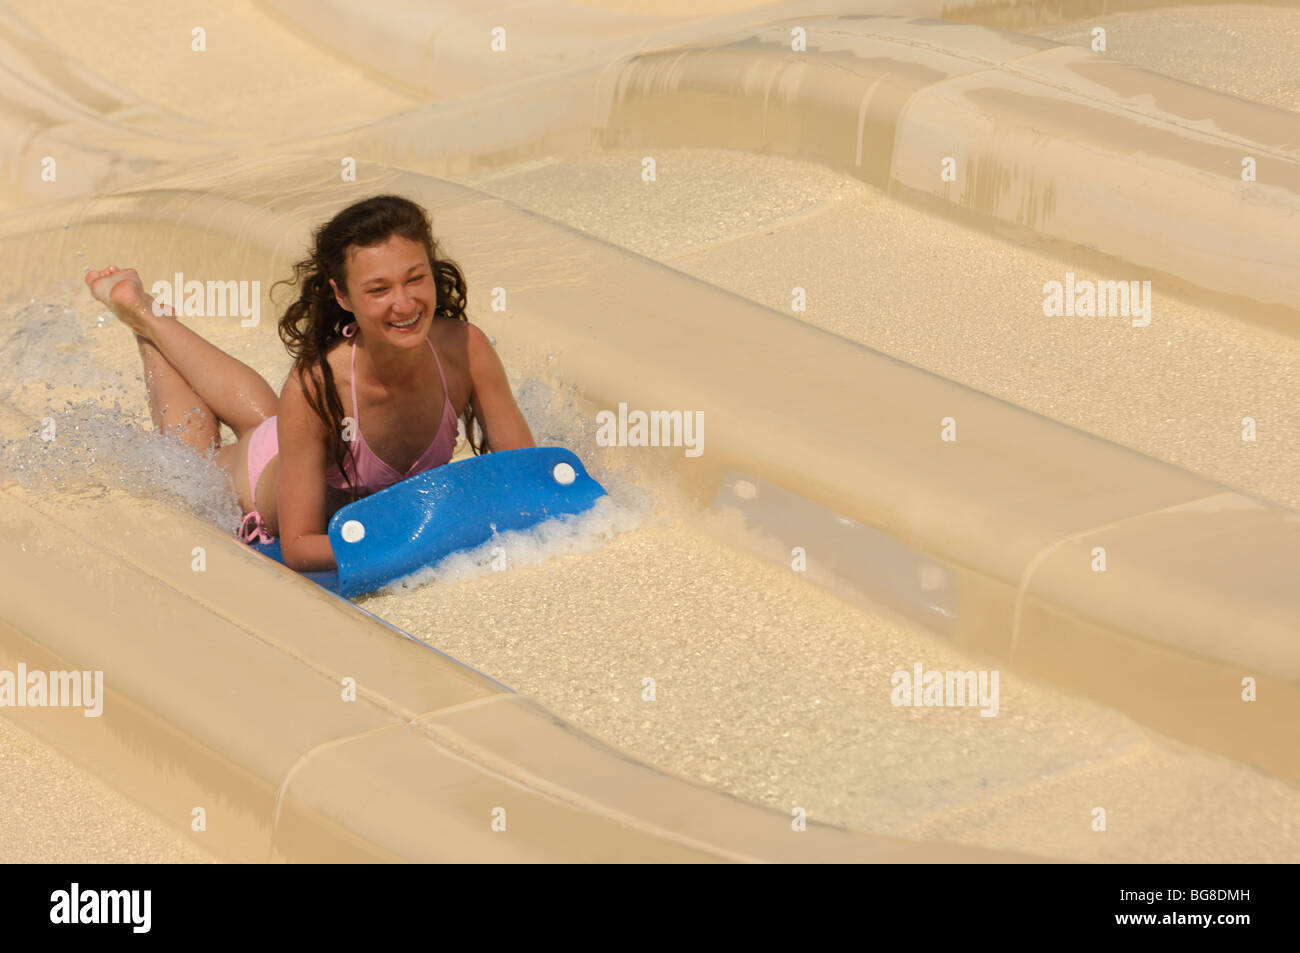 Junge lachende Frau auf einer Wasserrutsche in einen Wasserpark. Das Bild hat eine leichte Bewegungsunschärfe. Stockfoto